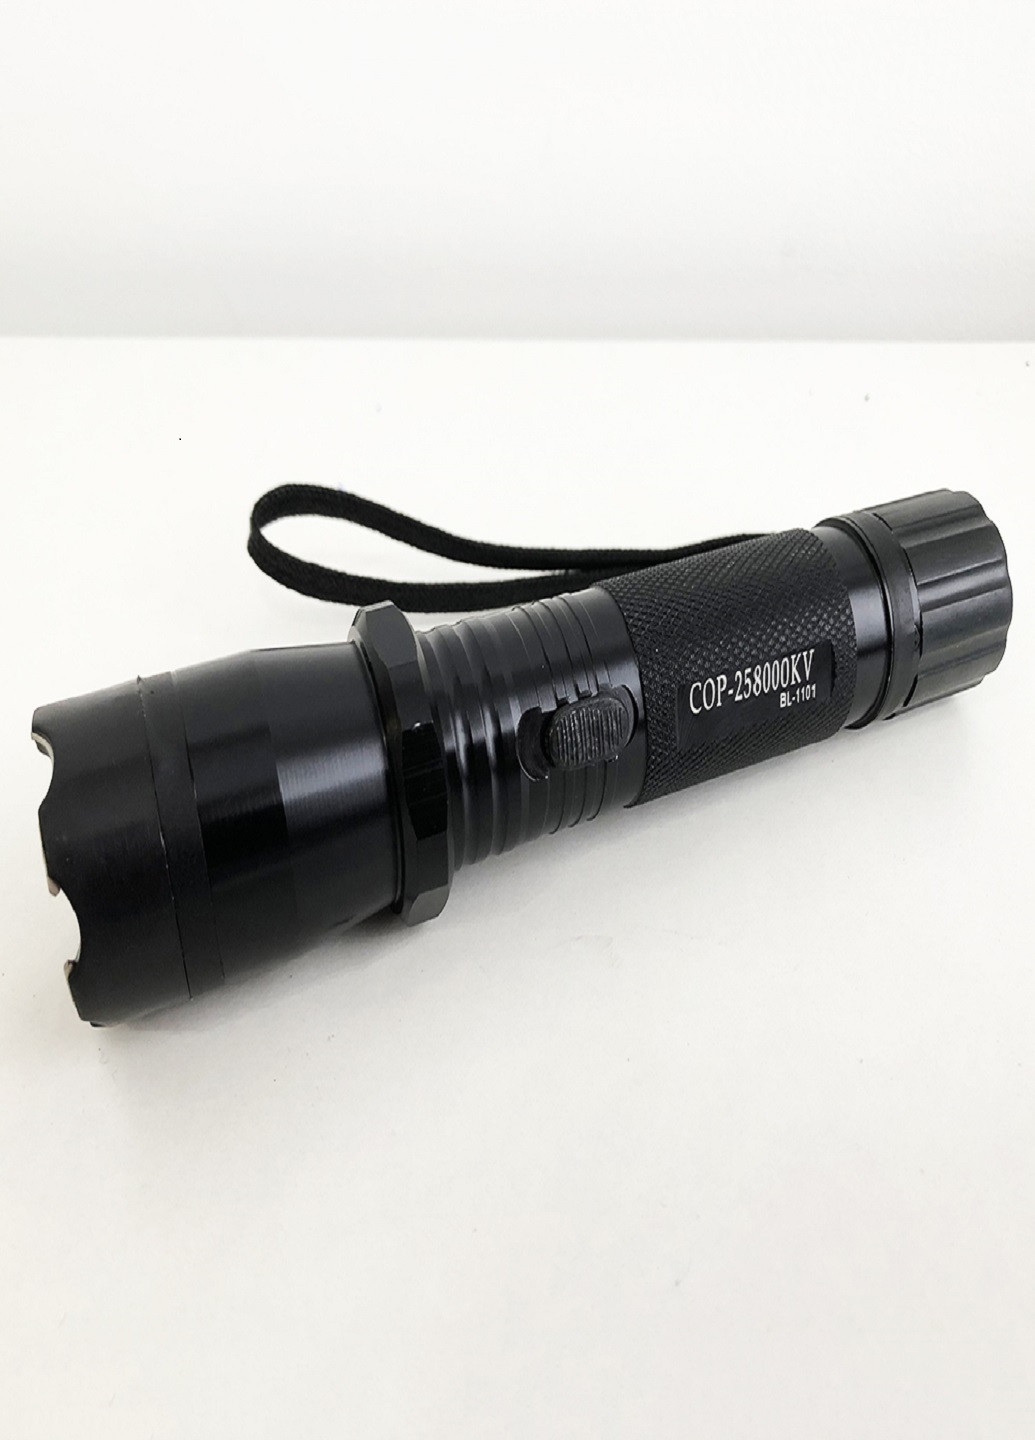 Ліхтарик BL 1101 c відлякувачем акумуляторний ліхтарик для самозахисту VTech (252814620)